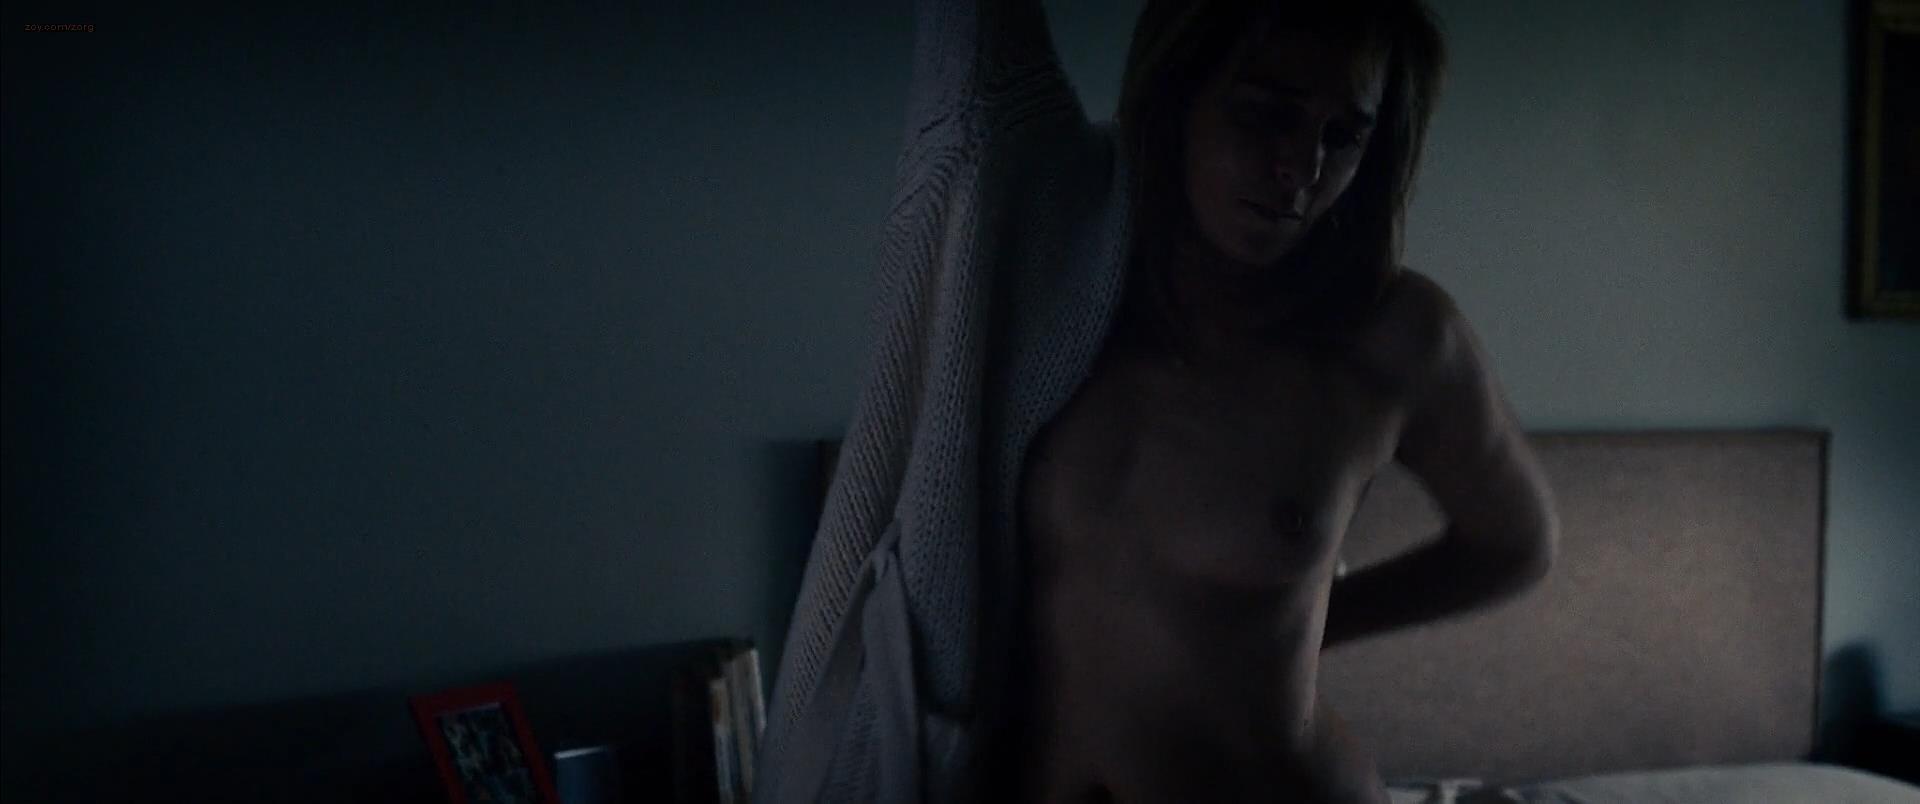 Valeria Golino nude topless in - Come il vento (2013) hd1080p